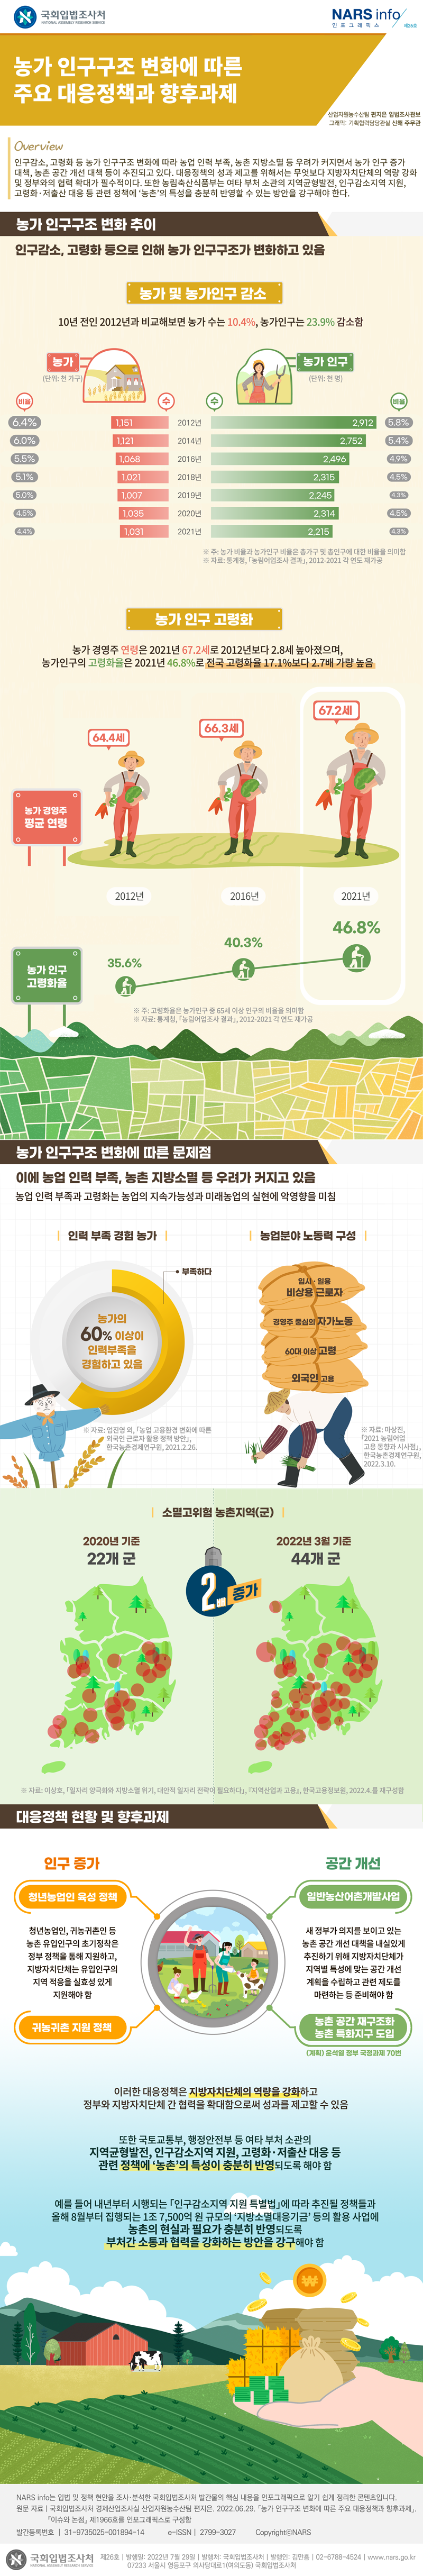 농가 인구구조 변화에 따른 주요 대응정책과 향후과제